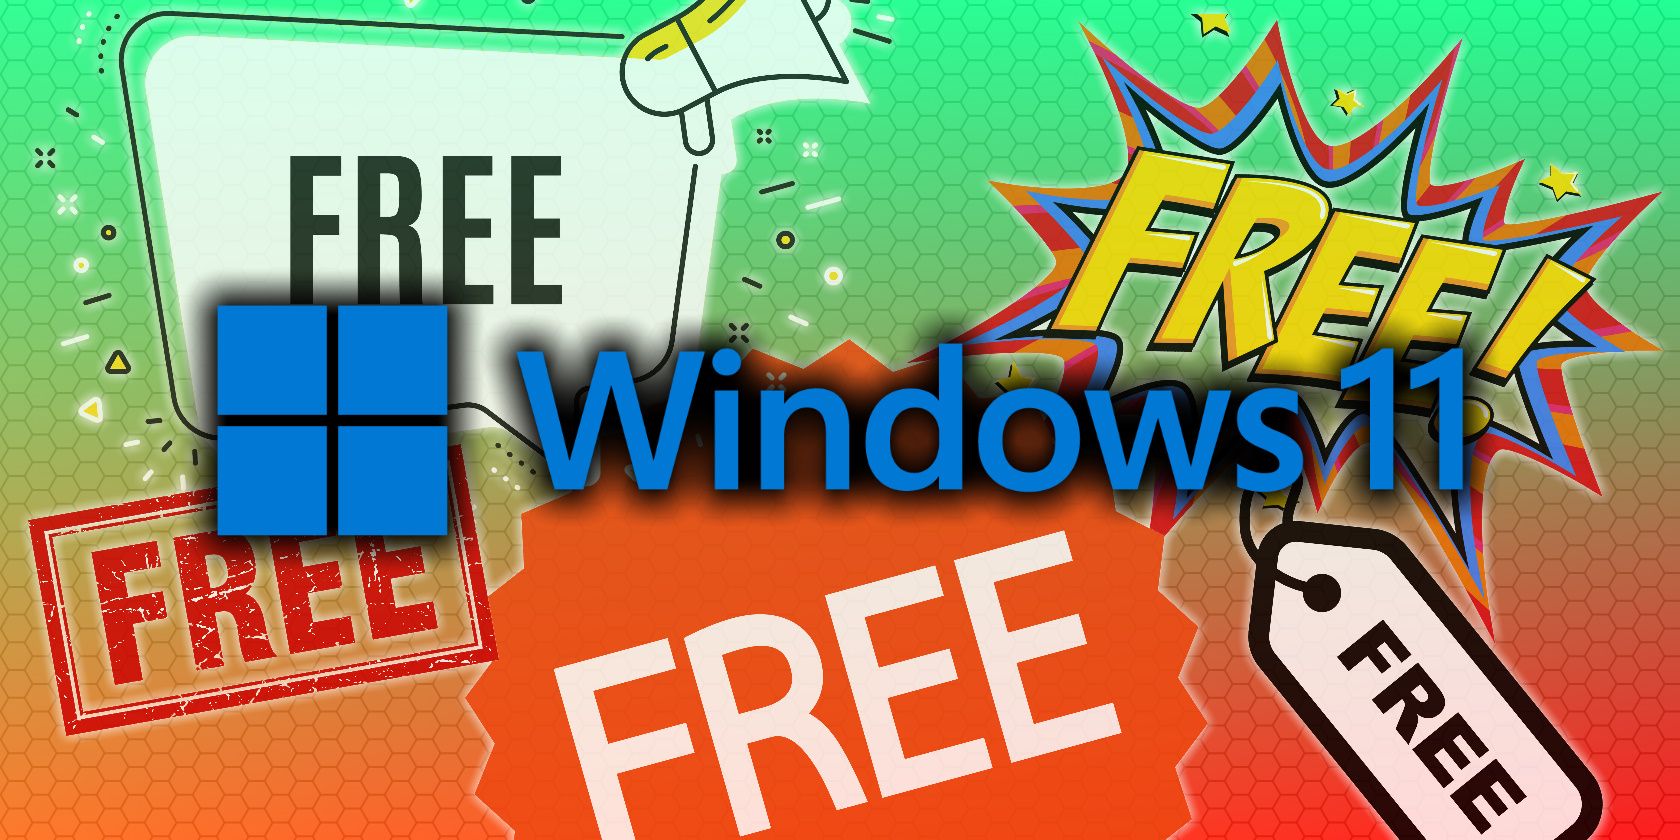 windows 8.1 free upgrade